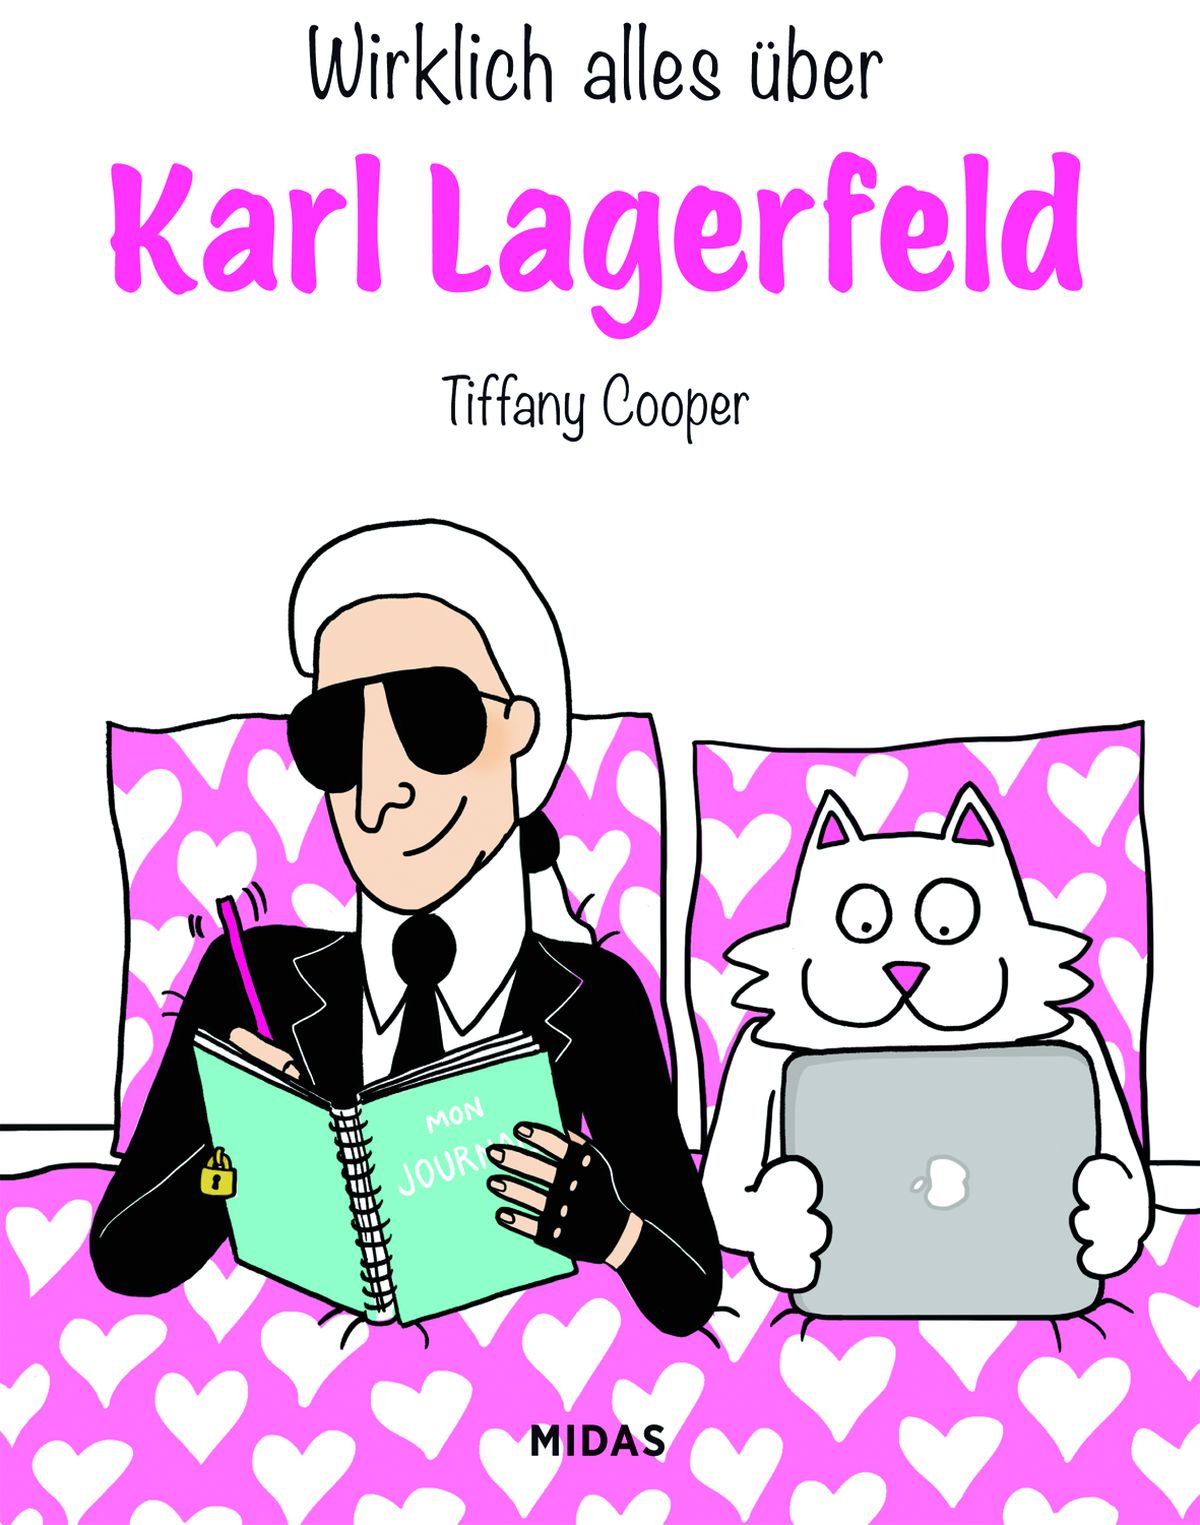 Foto: Neues Buch enthüllt Karl Lagerfelds verborgenen Seiten.